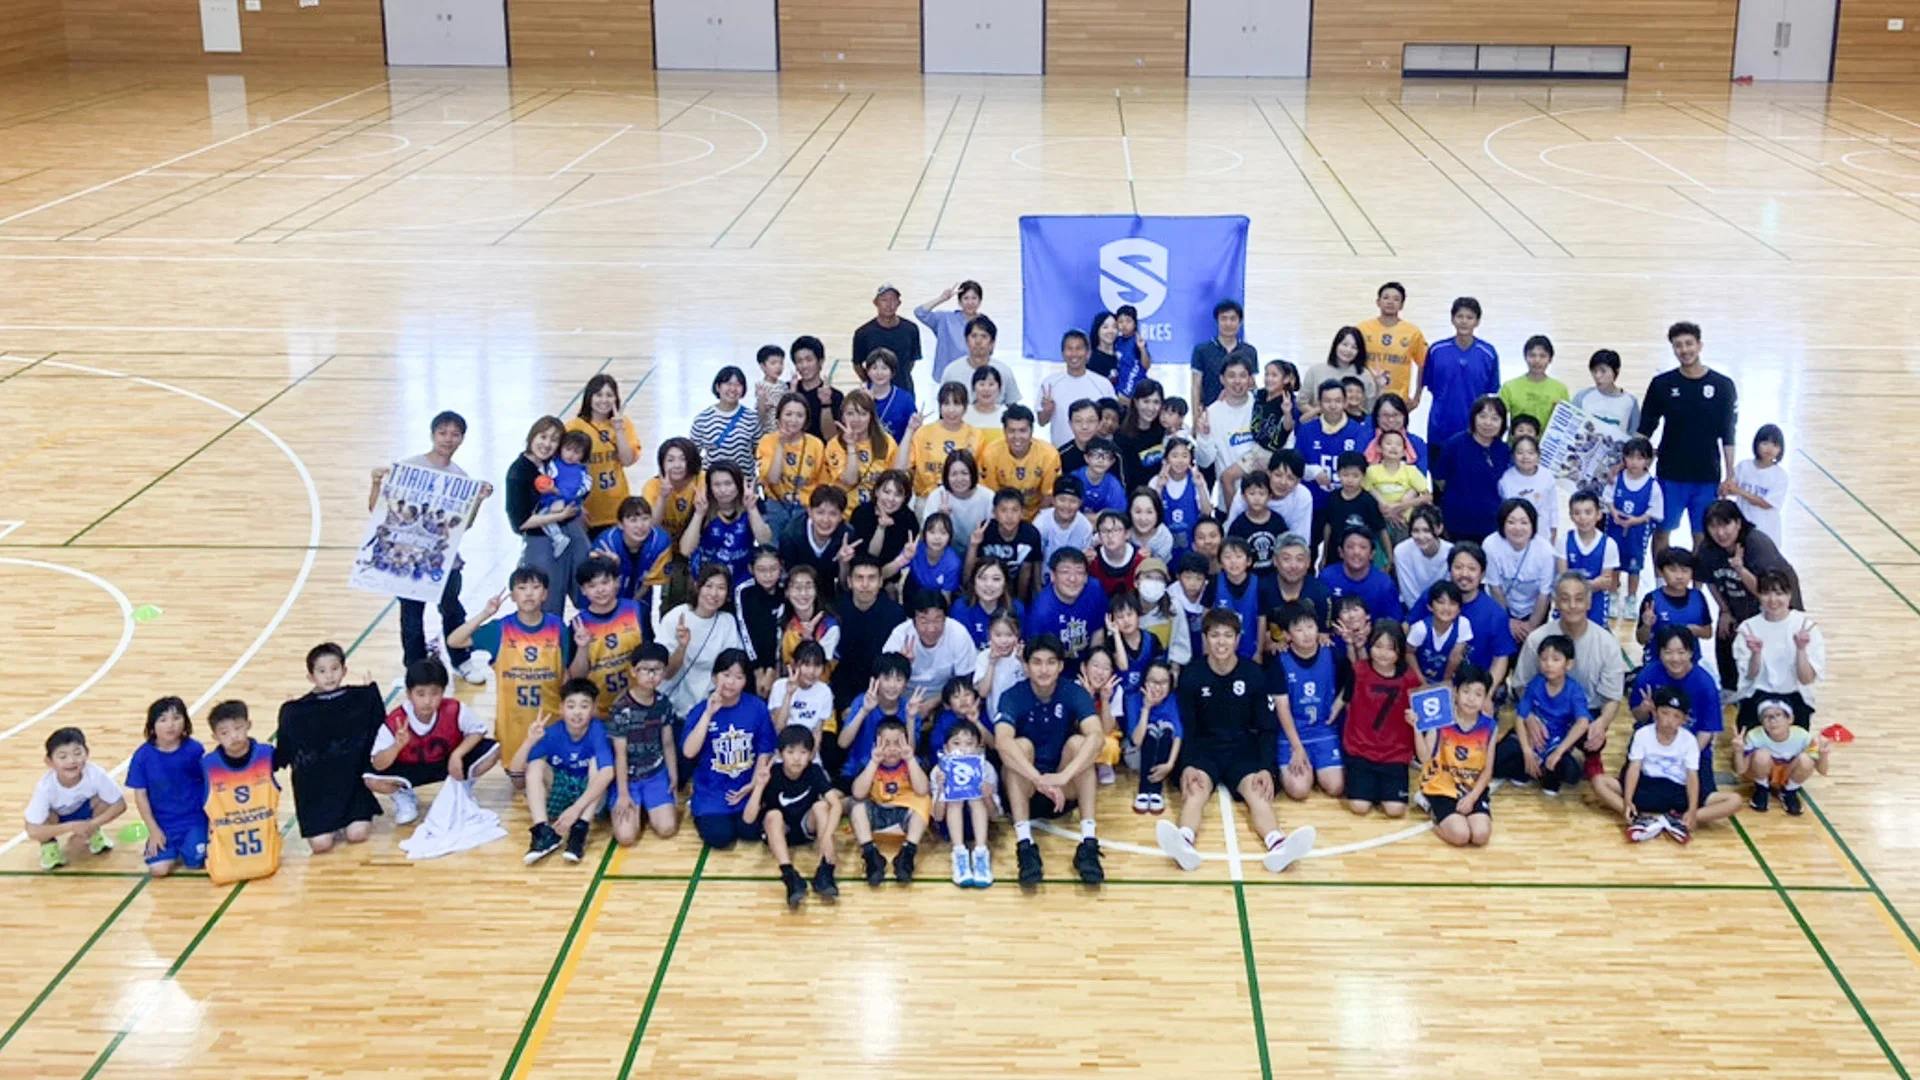 村田製作所 presents親子バスケクリニックを開催しました